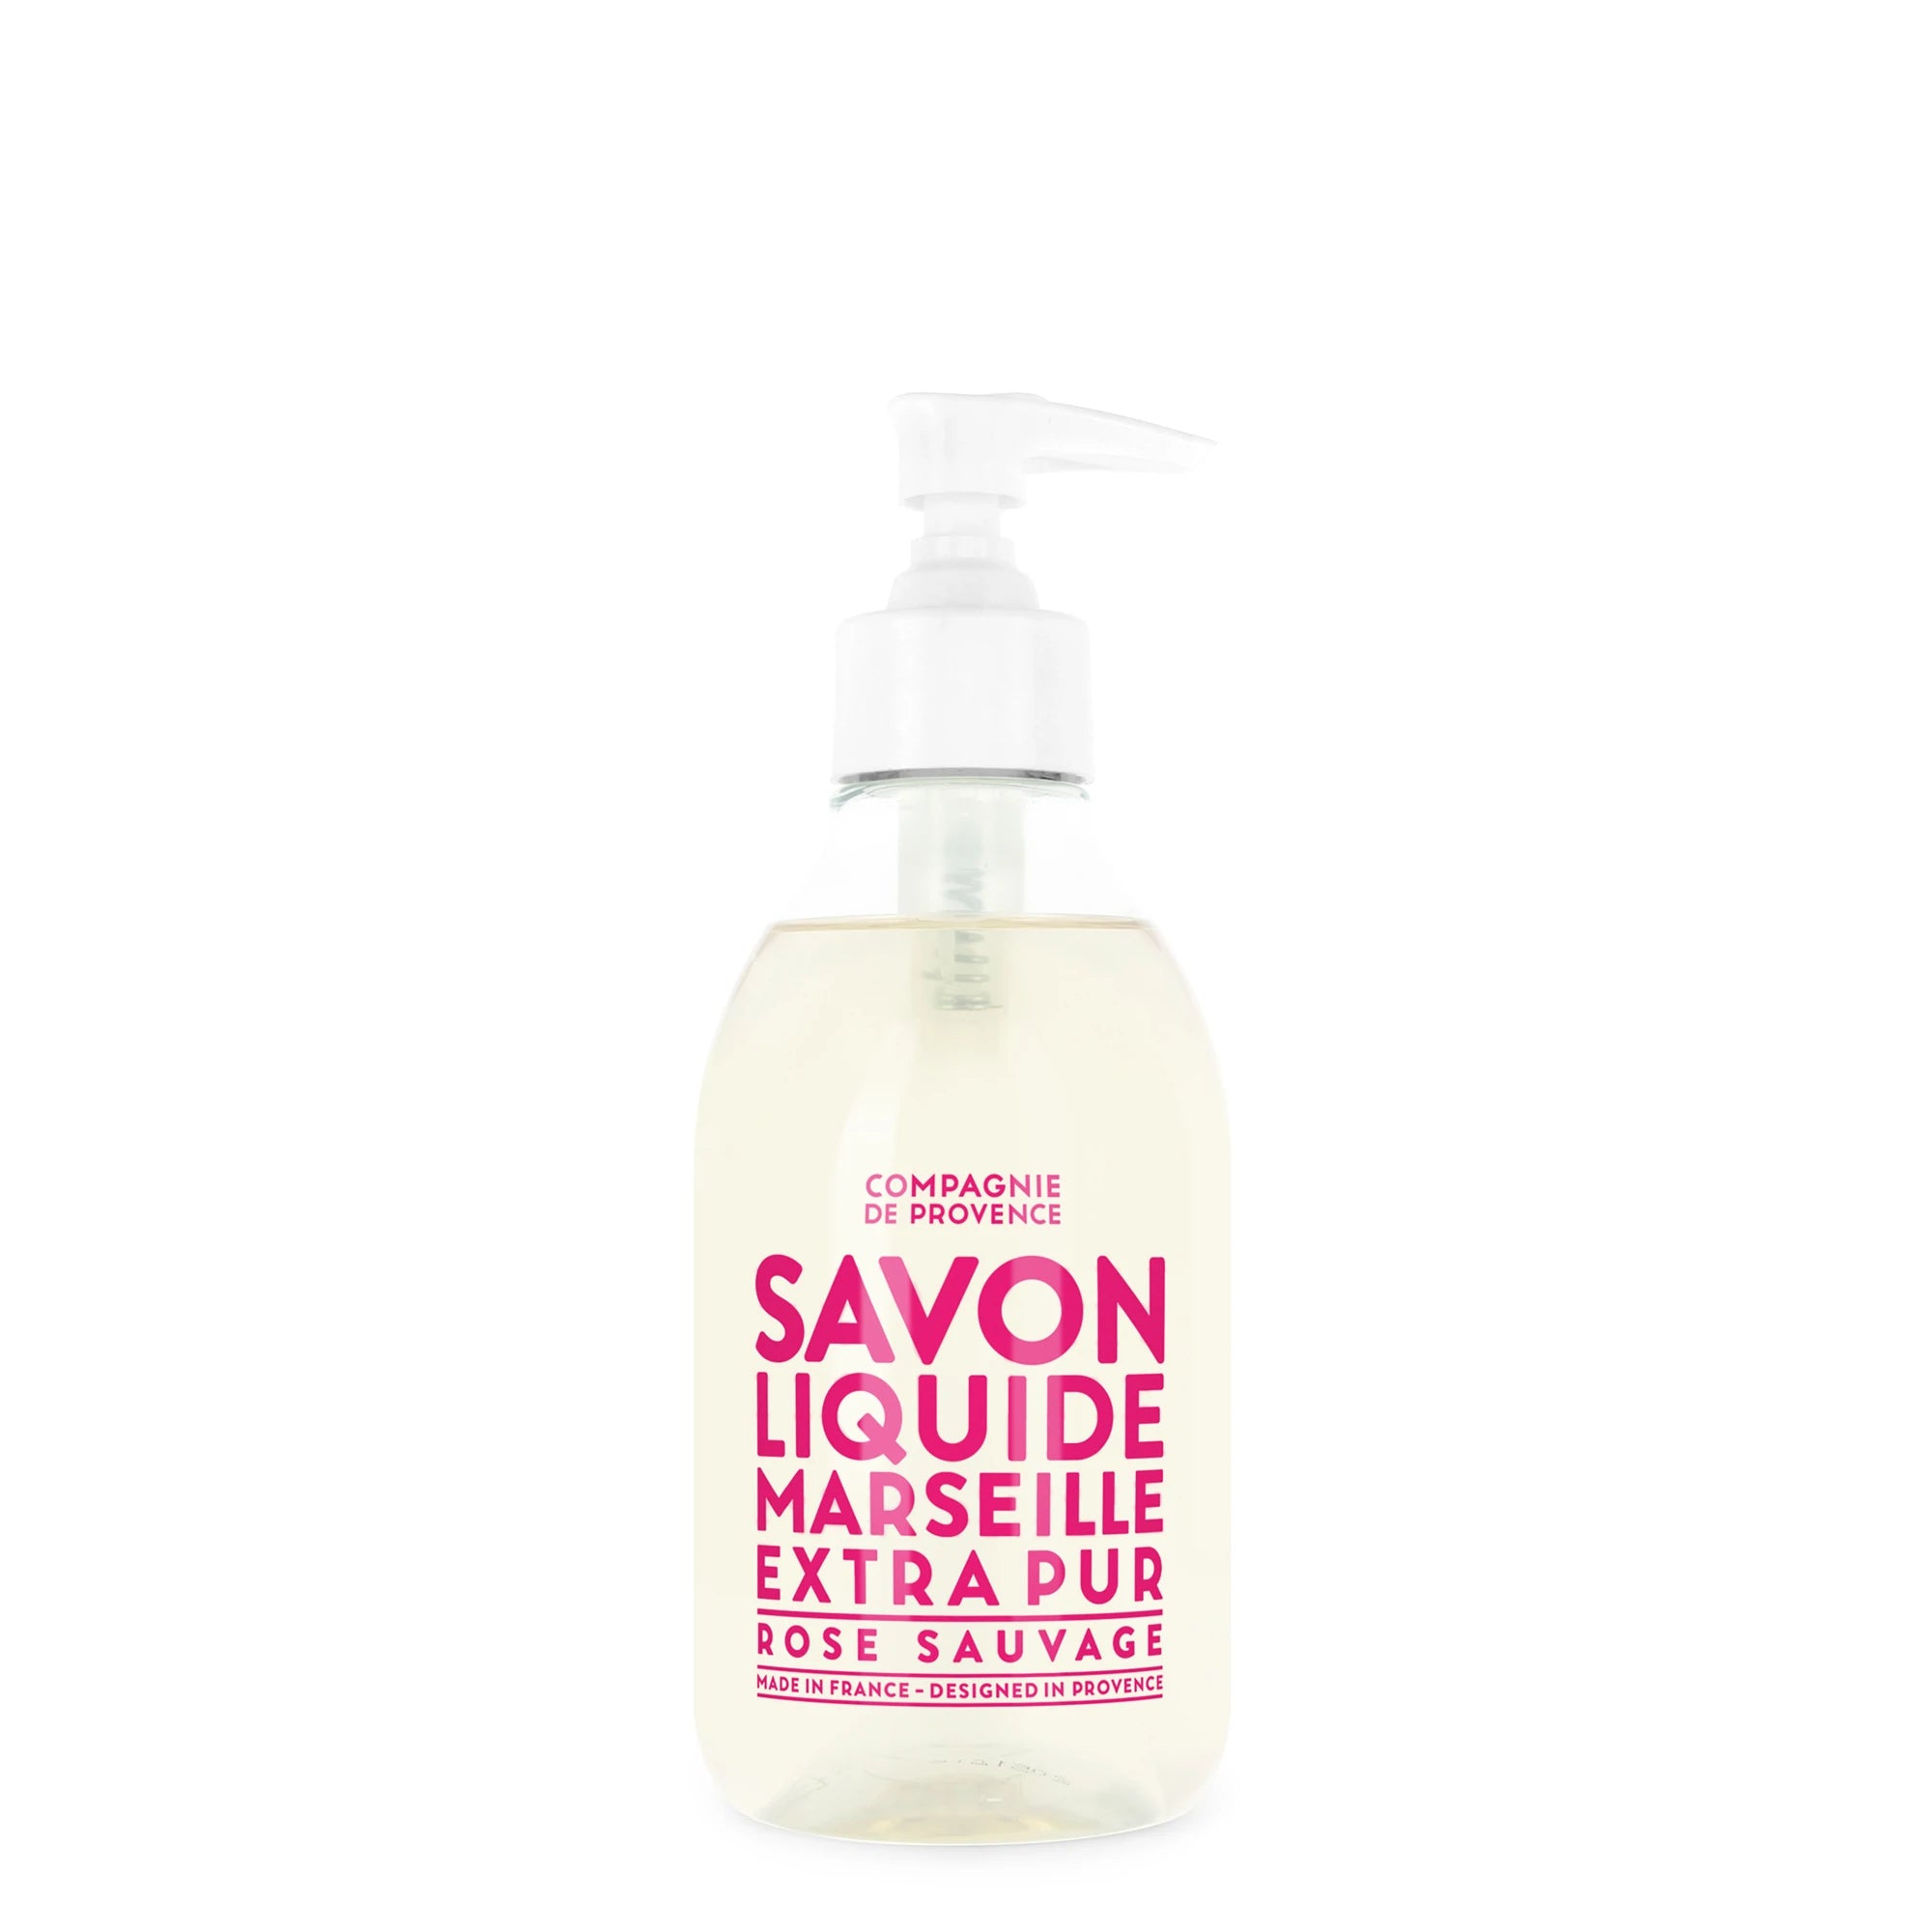 liquid marseille hand soap - rose